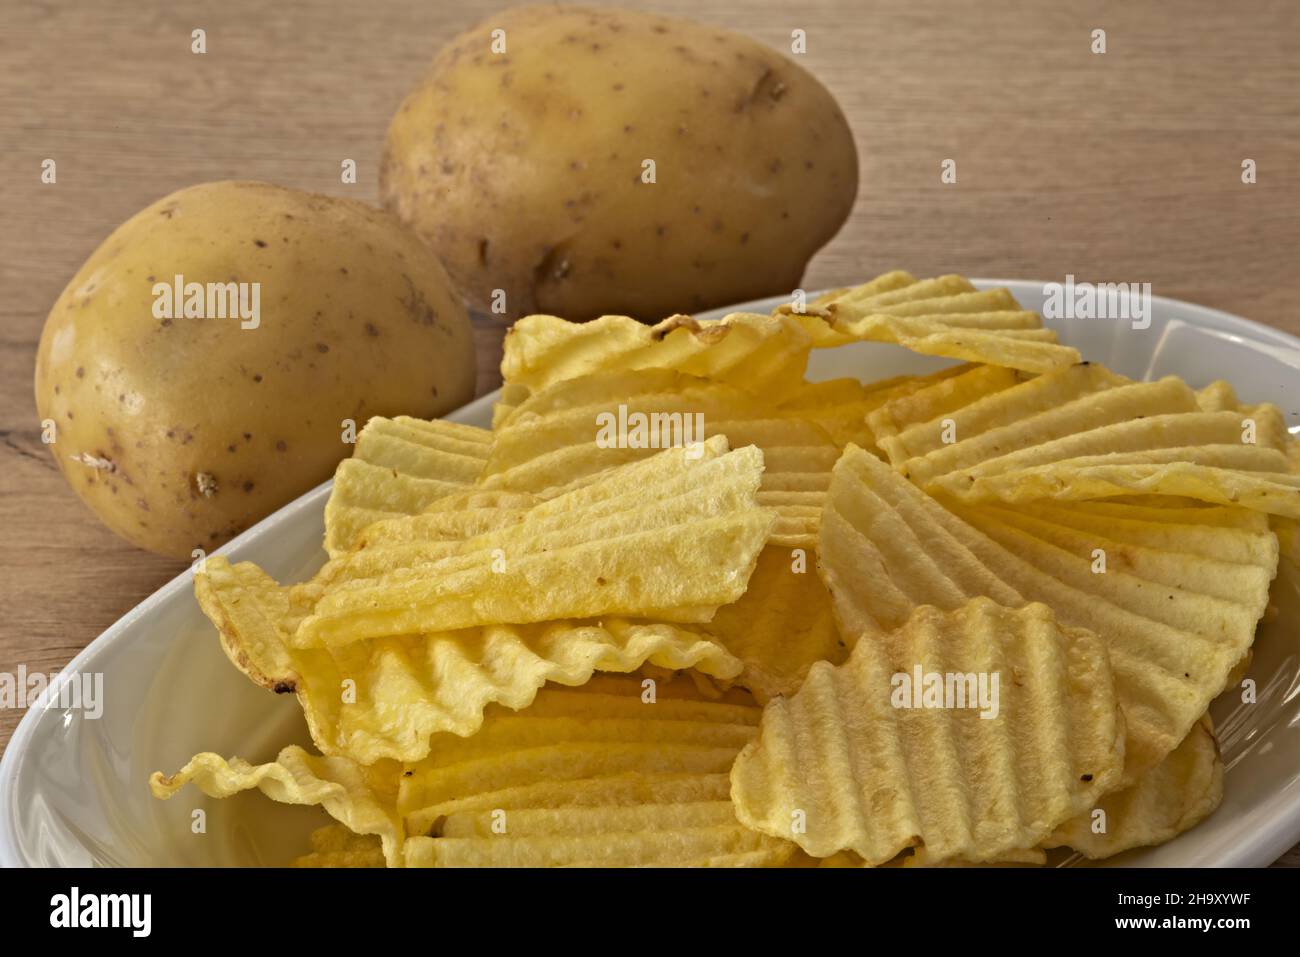 patate - patate fratte nel piatto primo piano vista da sopra con patate fresche altra vista Banque D'Images